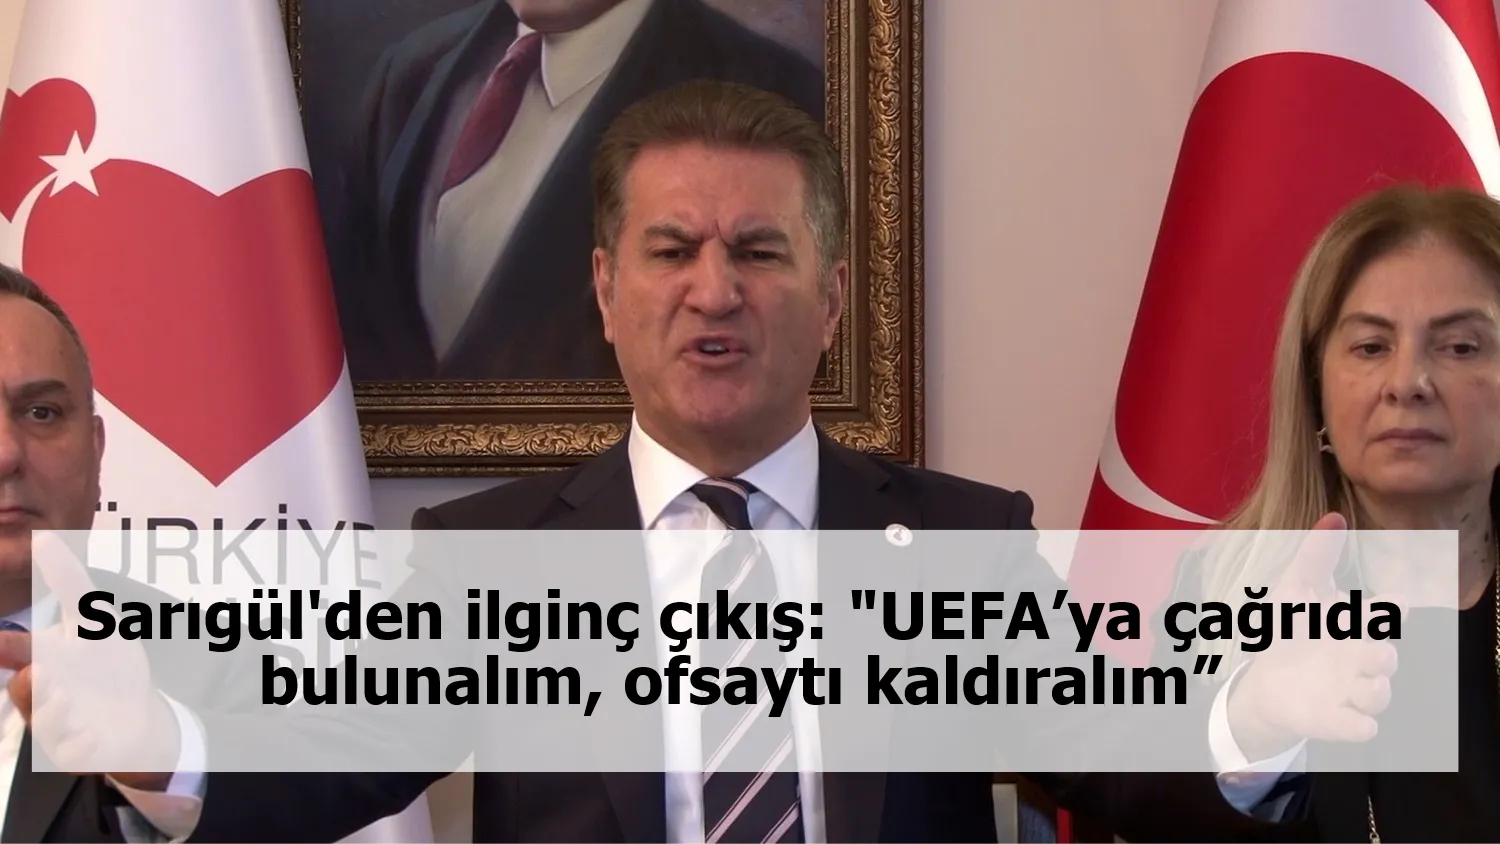 Sarıgül'den ilginç çıkış: "UEFA’ya çağrıda bulunalım, ofsaytı kaldıralım”